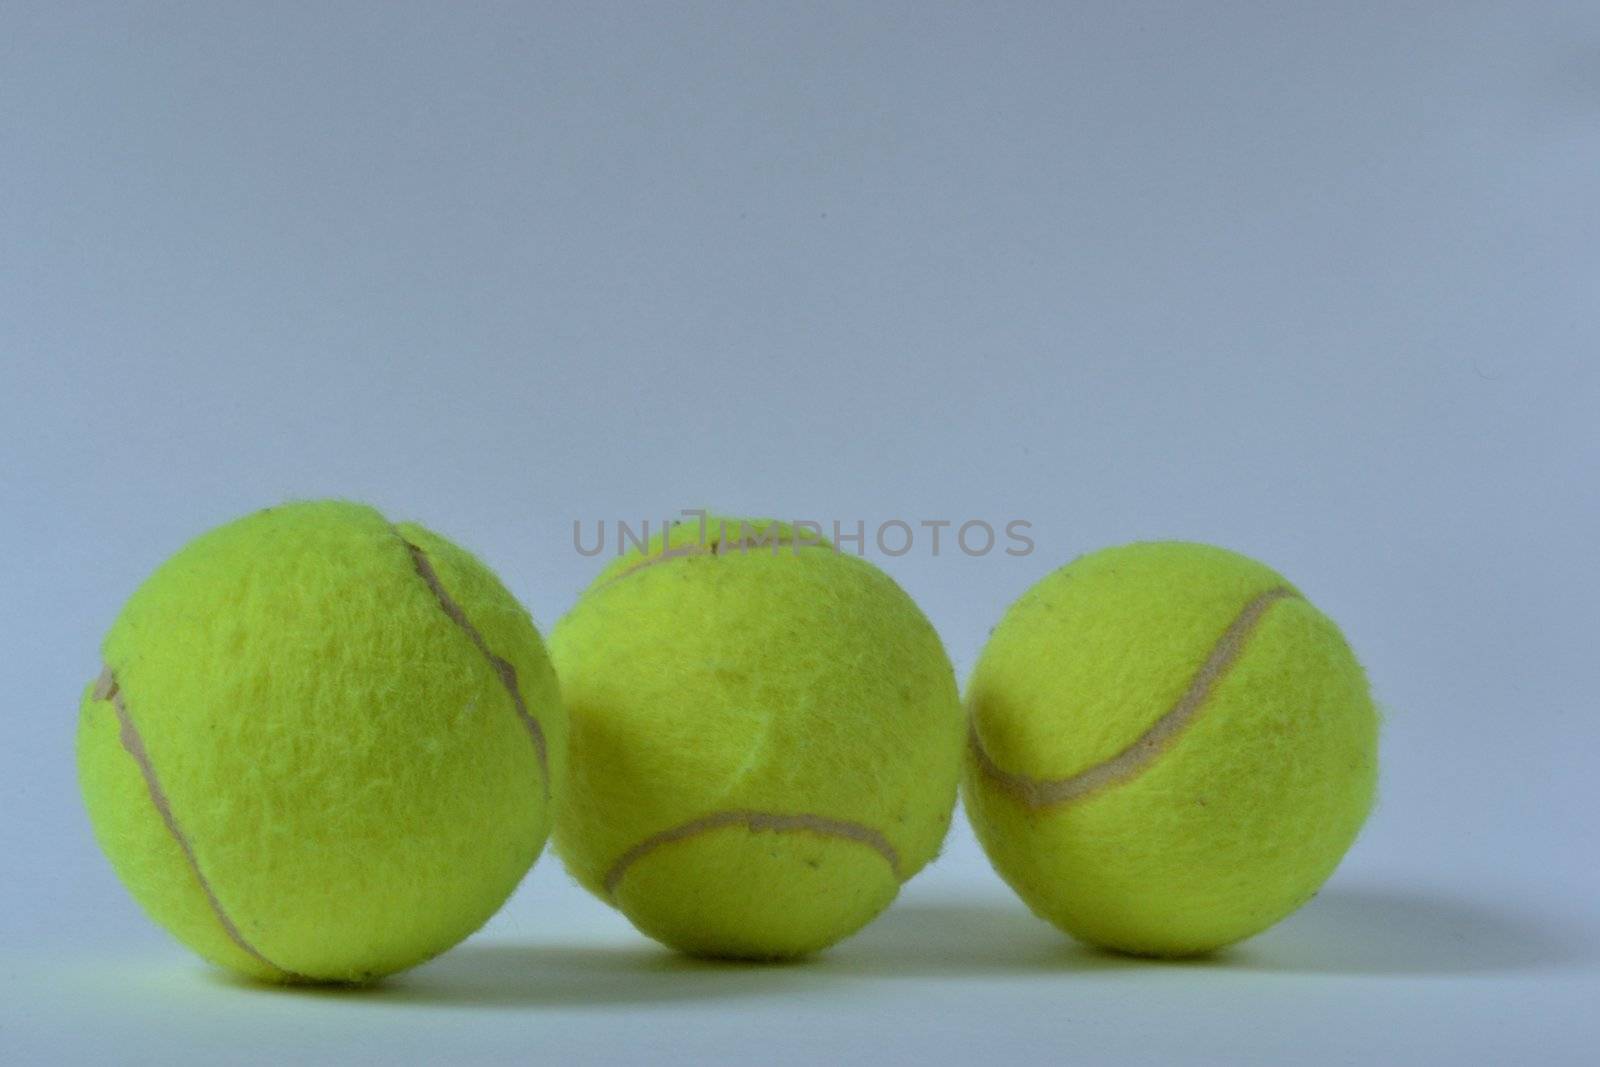 The tennis balls by Autre